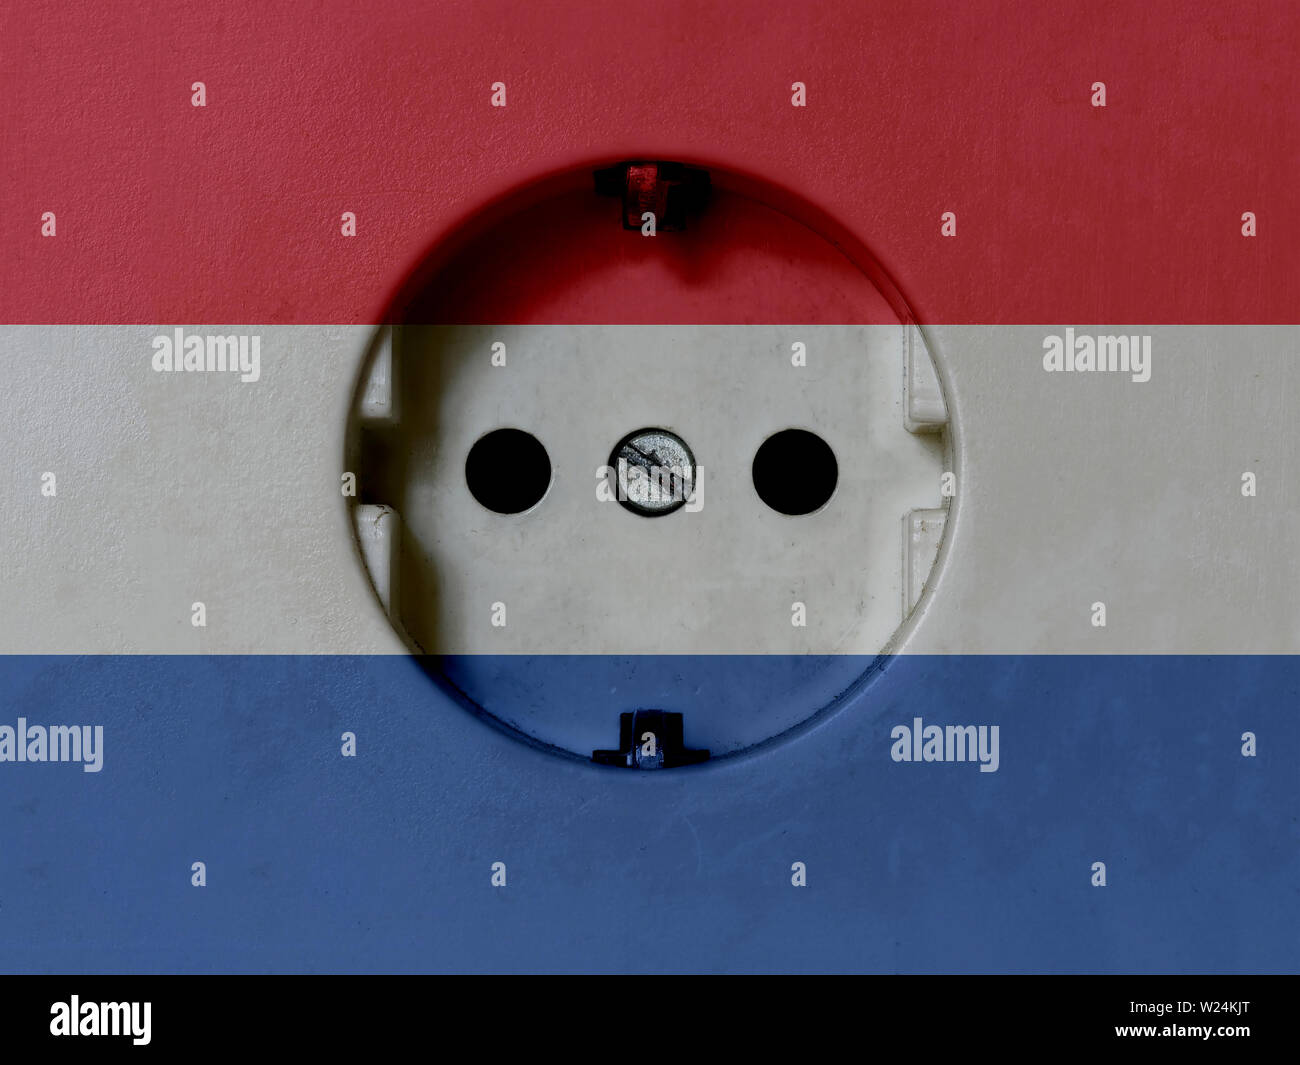 Strom Konzept: Schmutzige Typ F Steckdose für die Stromversorgung mit  Niederlande Flagge Stockfotografie - Alamy